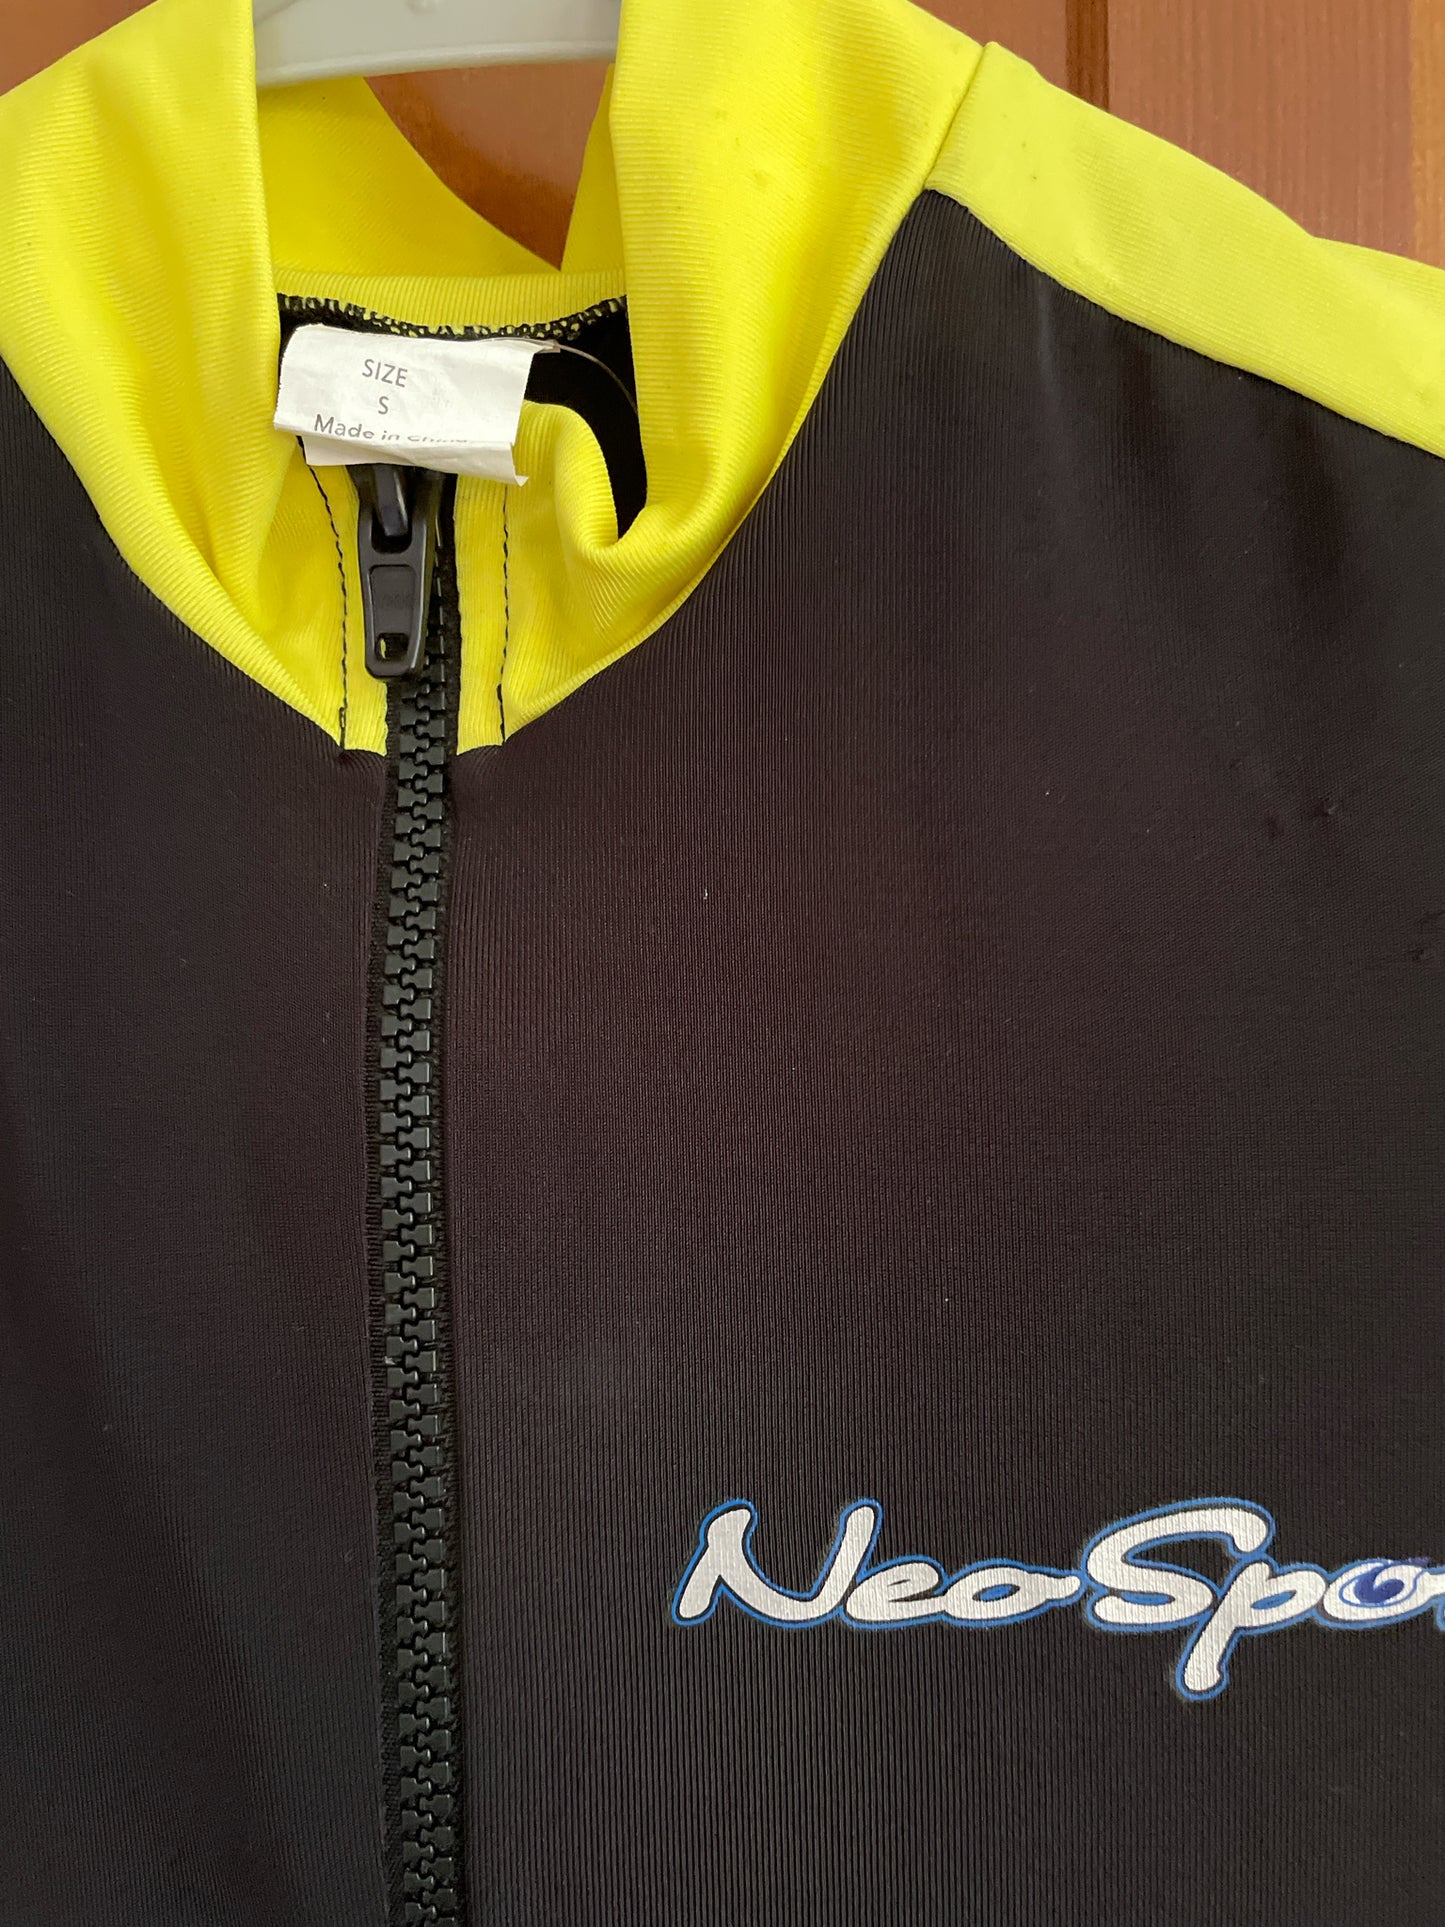 NeoSport Full Skin Men's S